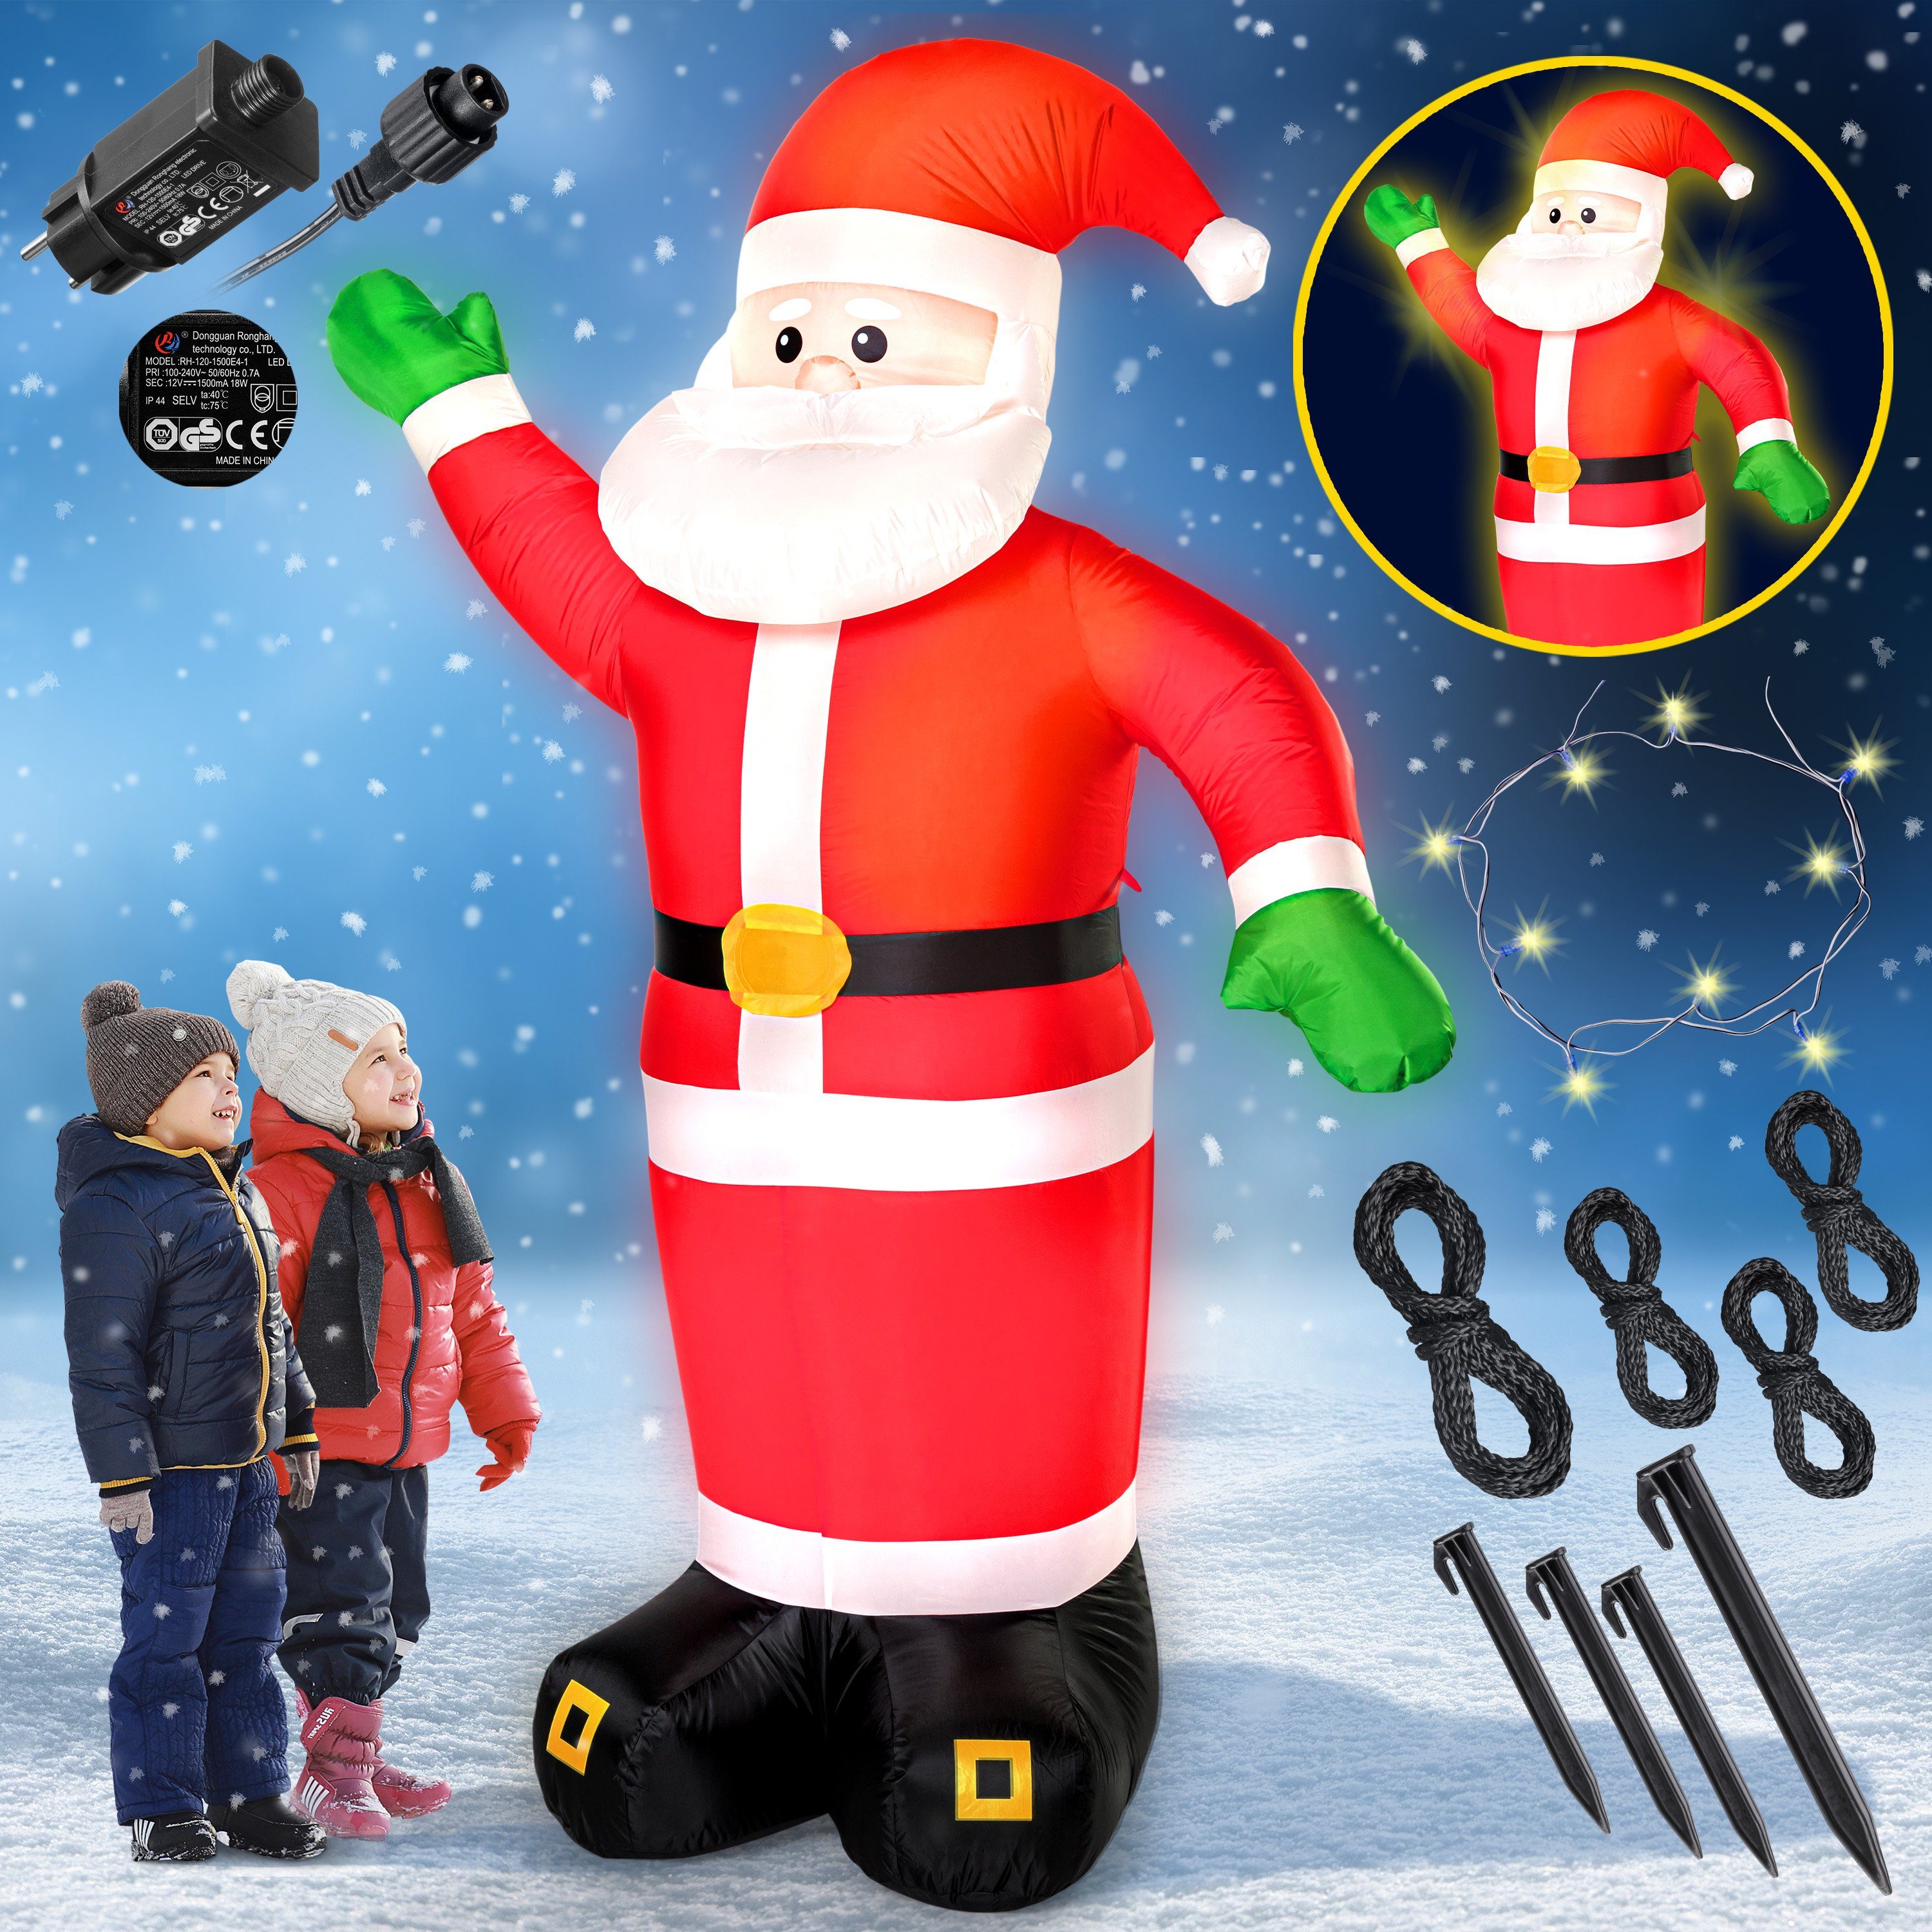 monzana Weihnachtsmann, Aufblasbarer XXL 250cm IP44 Befestigungsmaterial Außen LED Beleuchtet